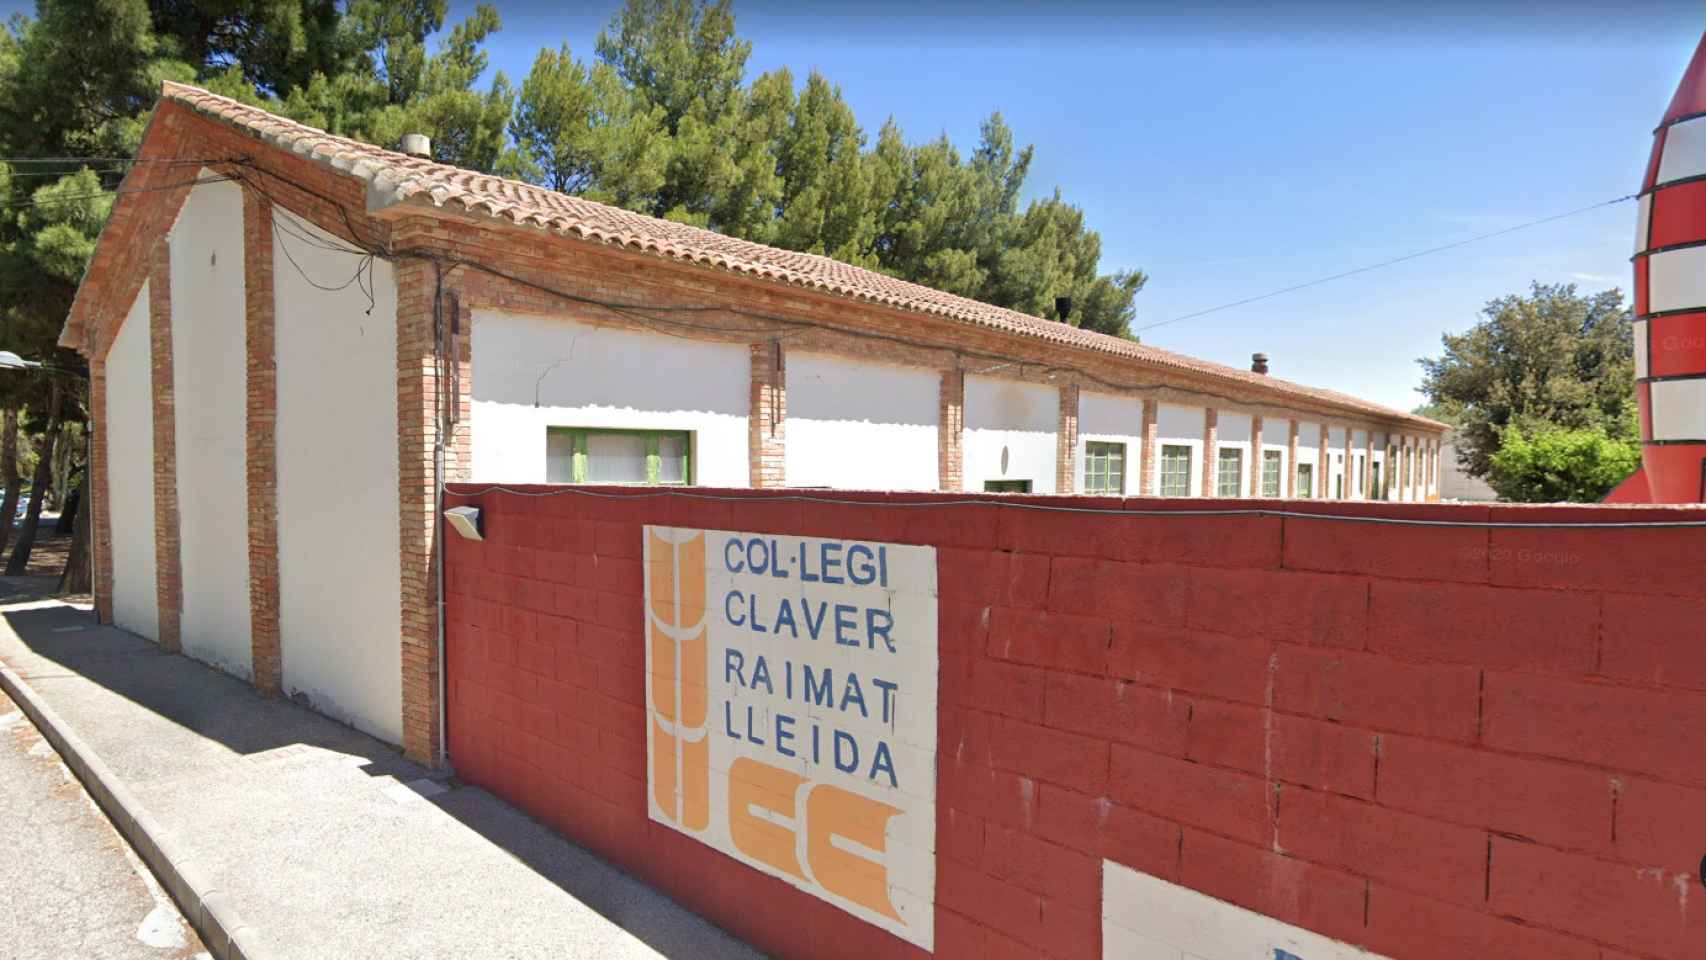 Colegio Jesuitas de Lleida Claver- Raïmat